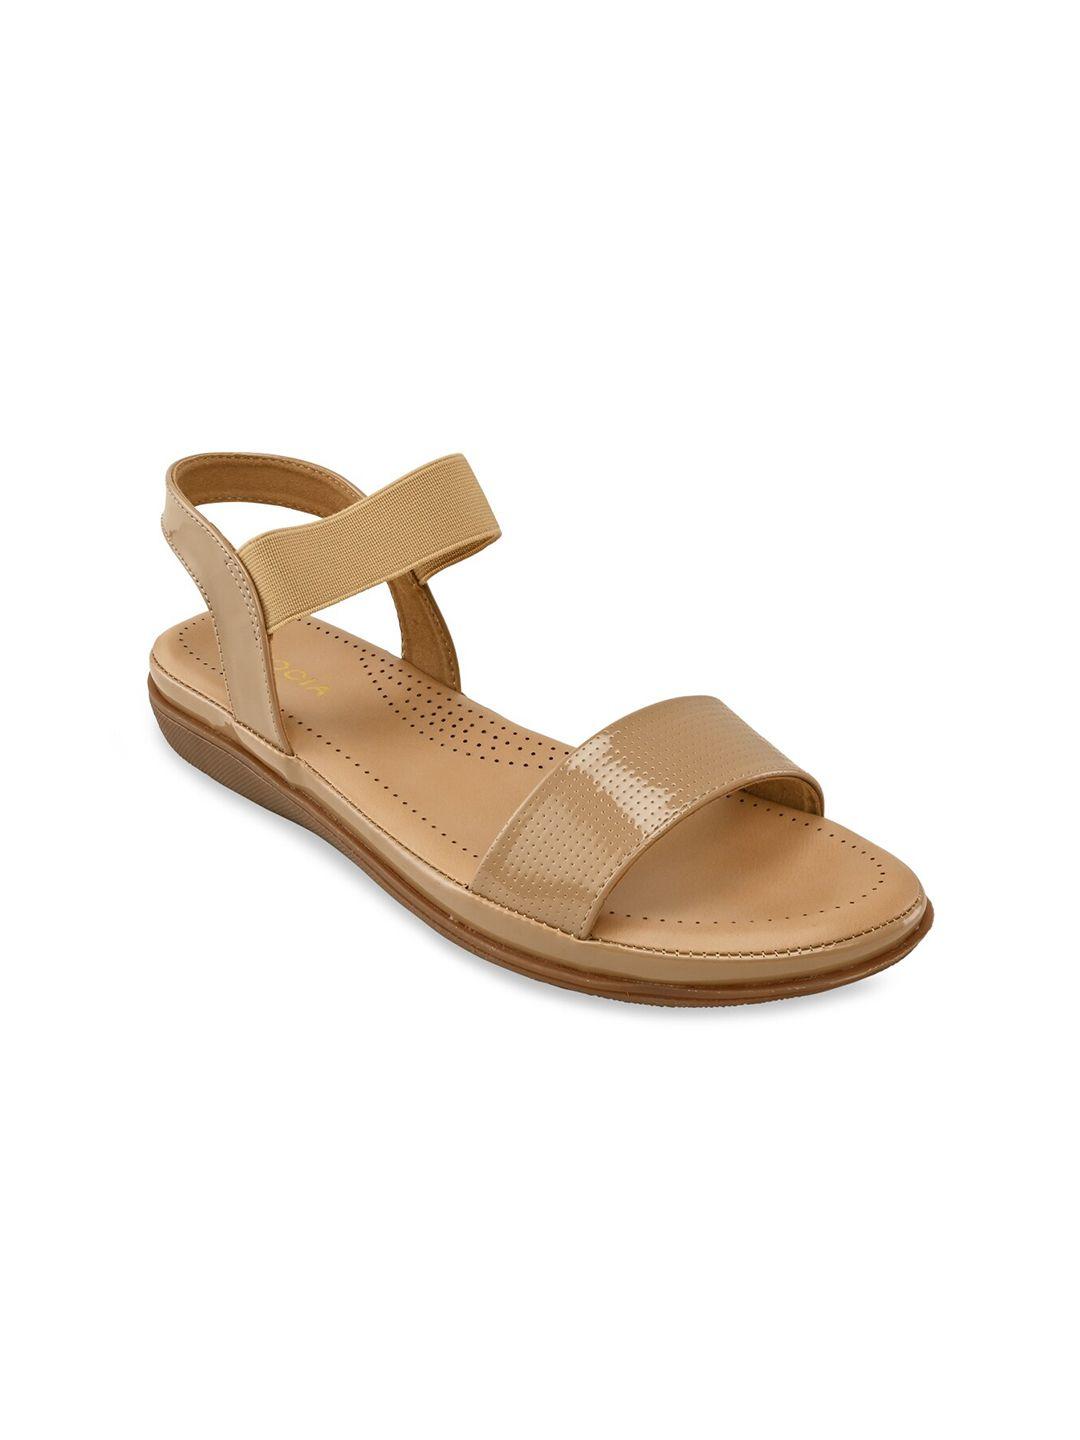 rocia women beige comfort sandals